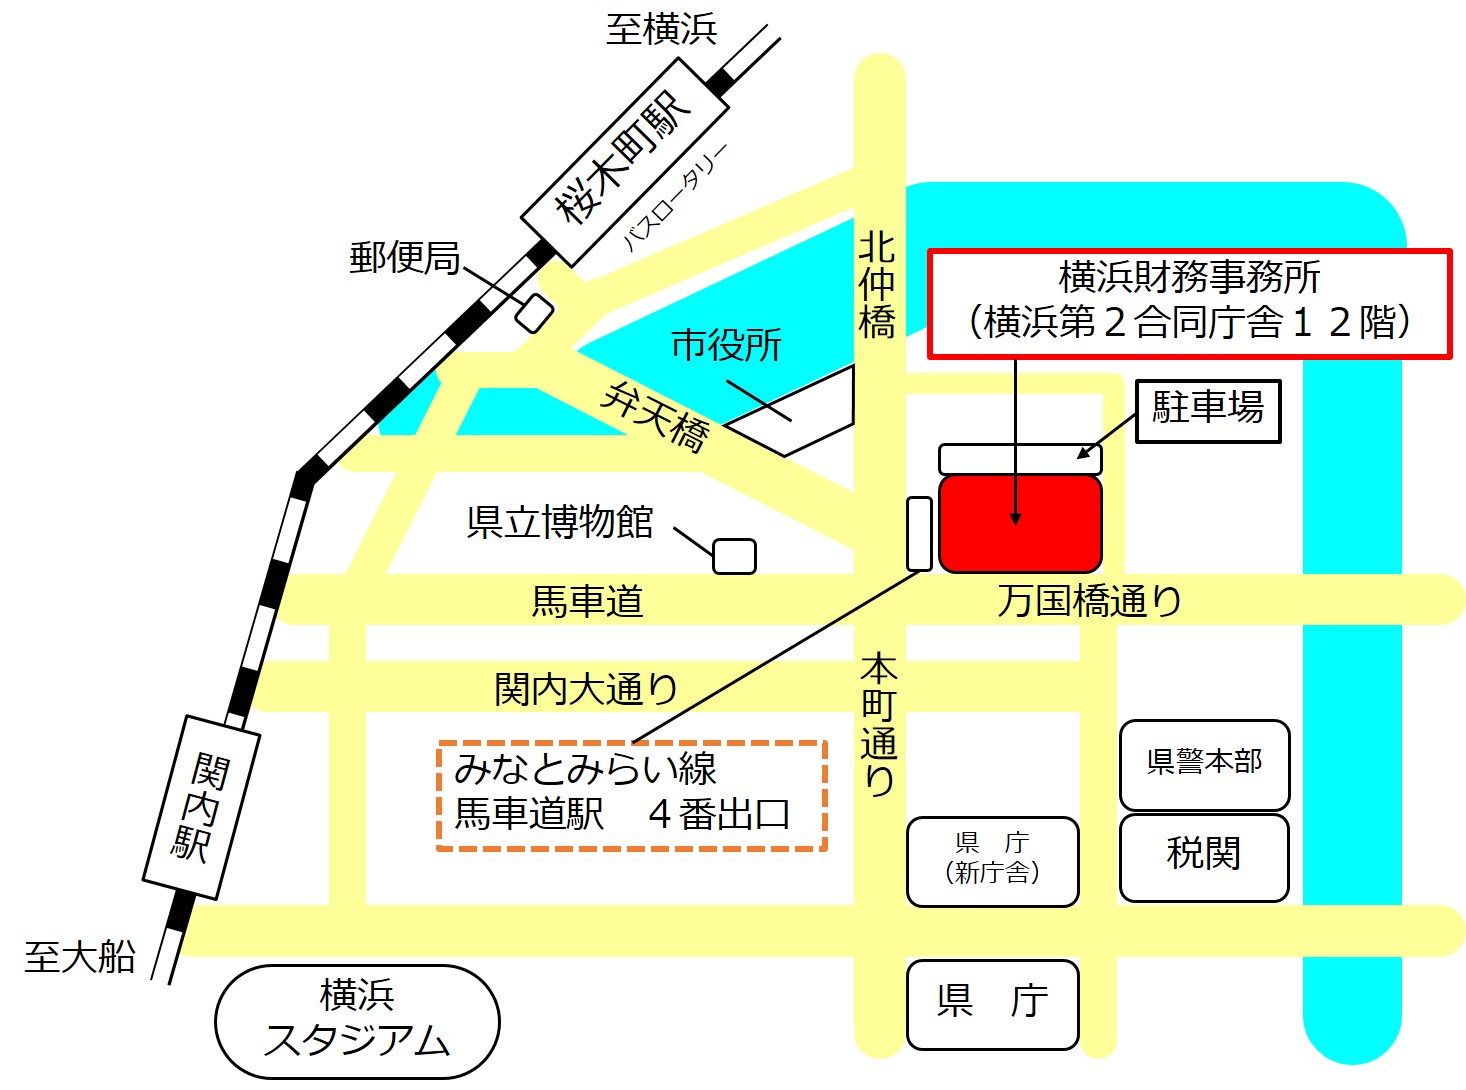 桜木町駅と関内駅を含む案内図イラスト